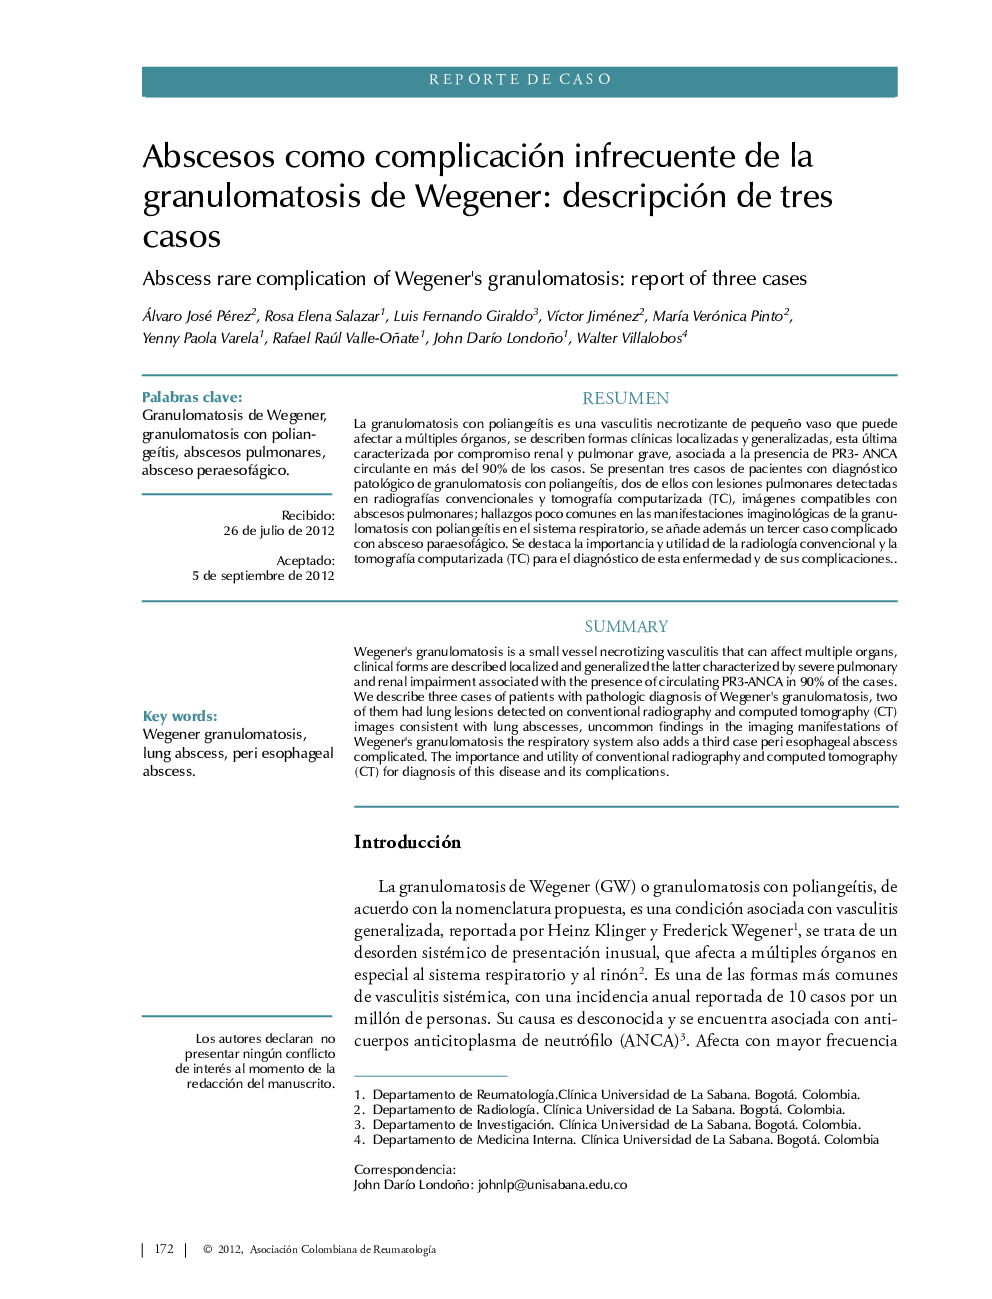 Abscesos como complicación infrecuente de la granulomatosis de Wegener: descripción de tres casos